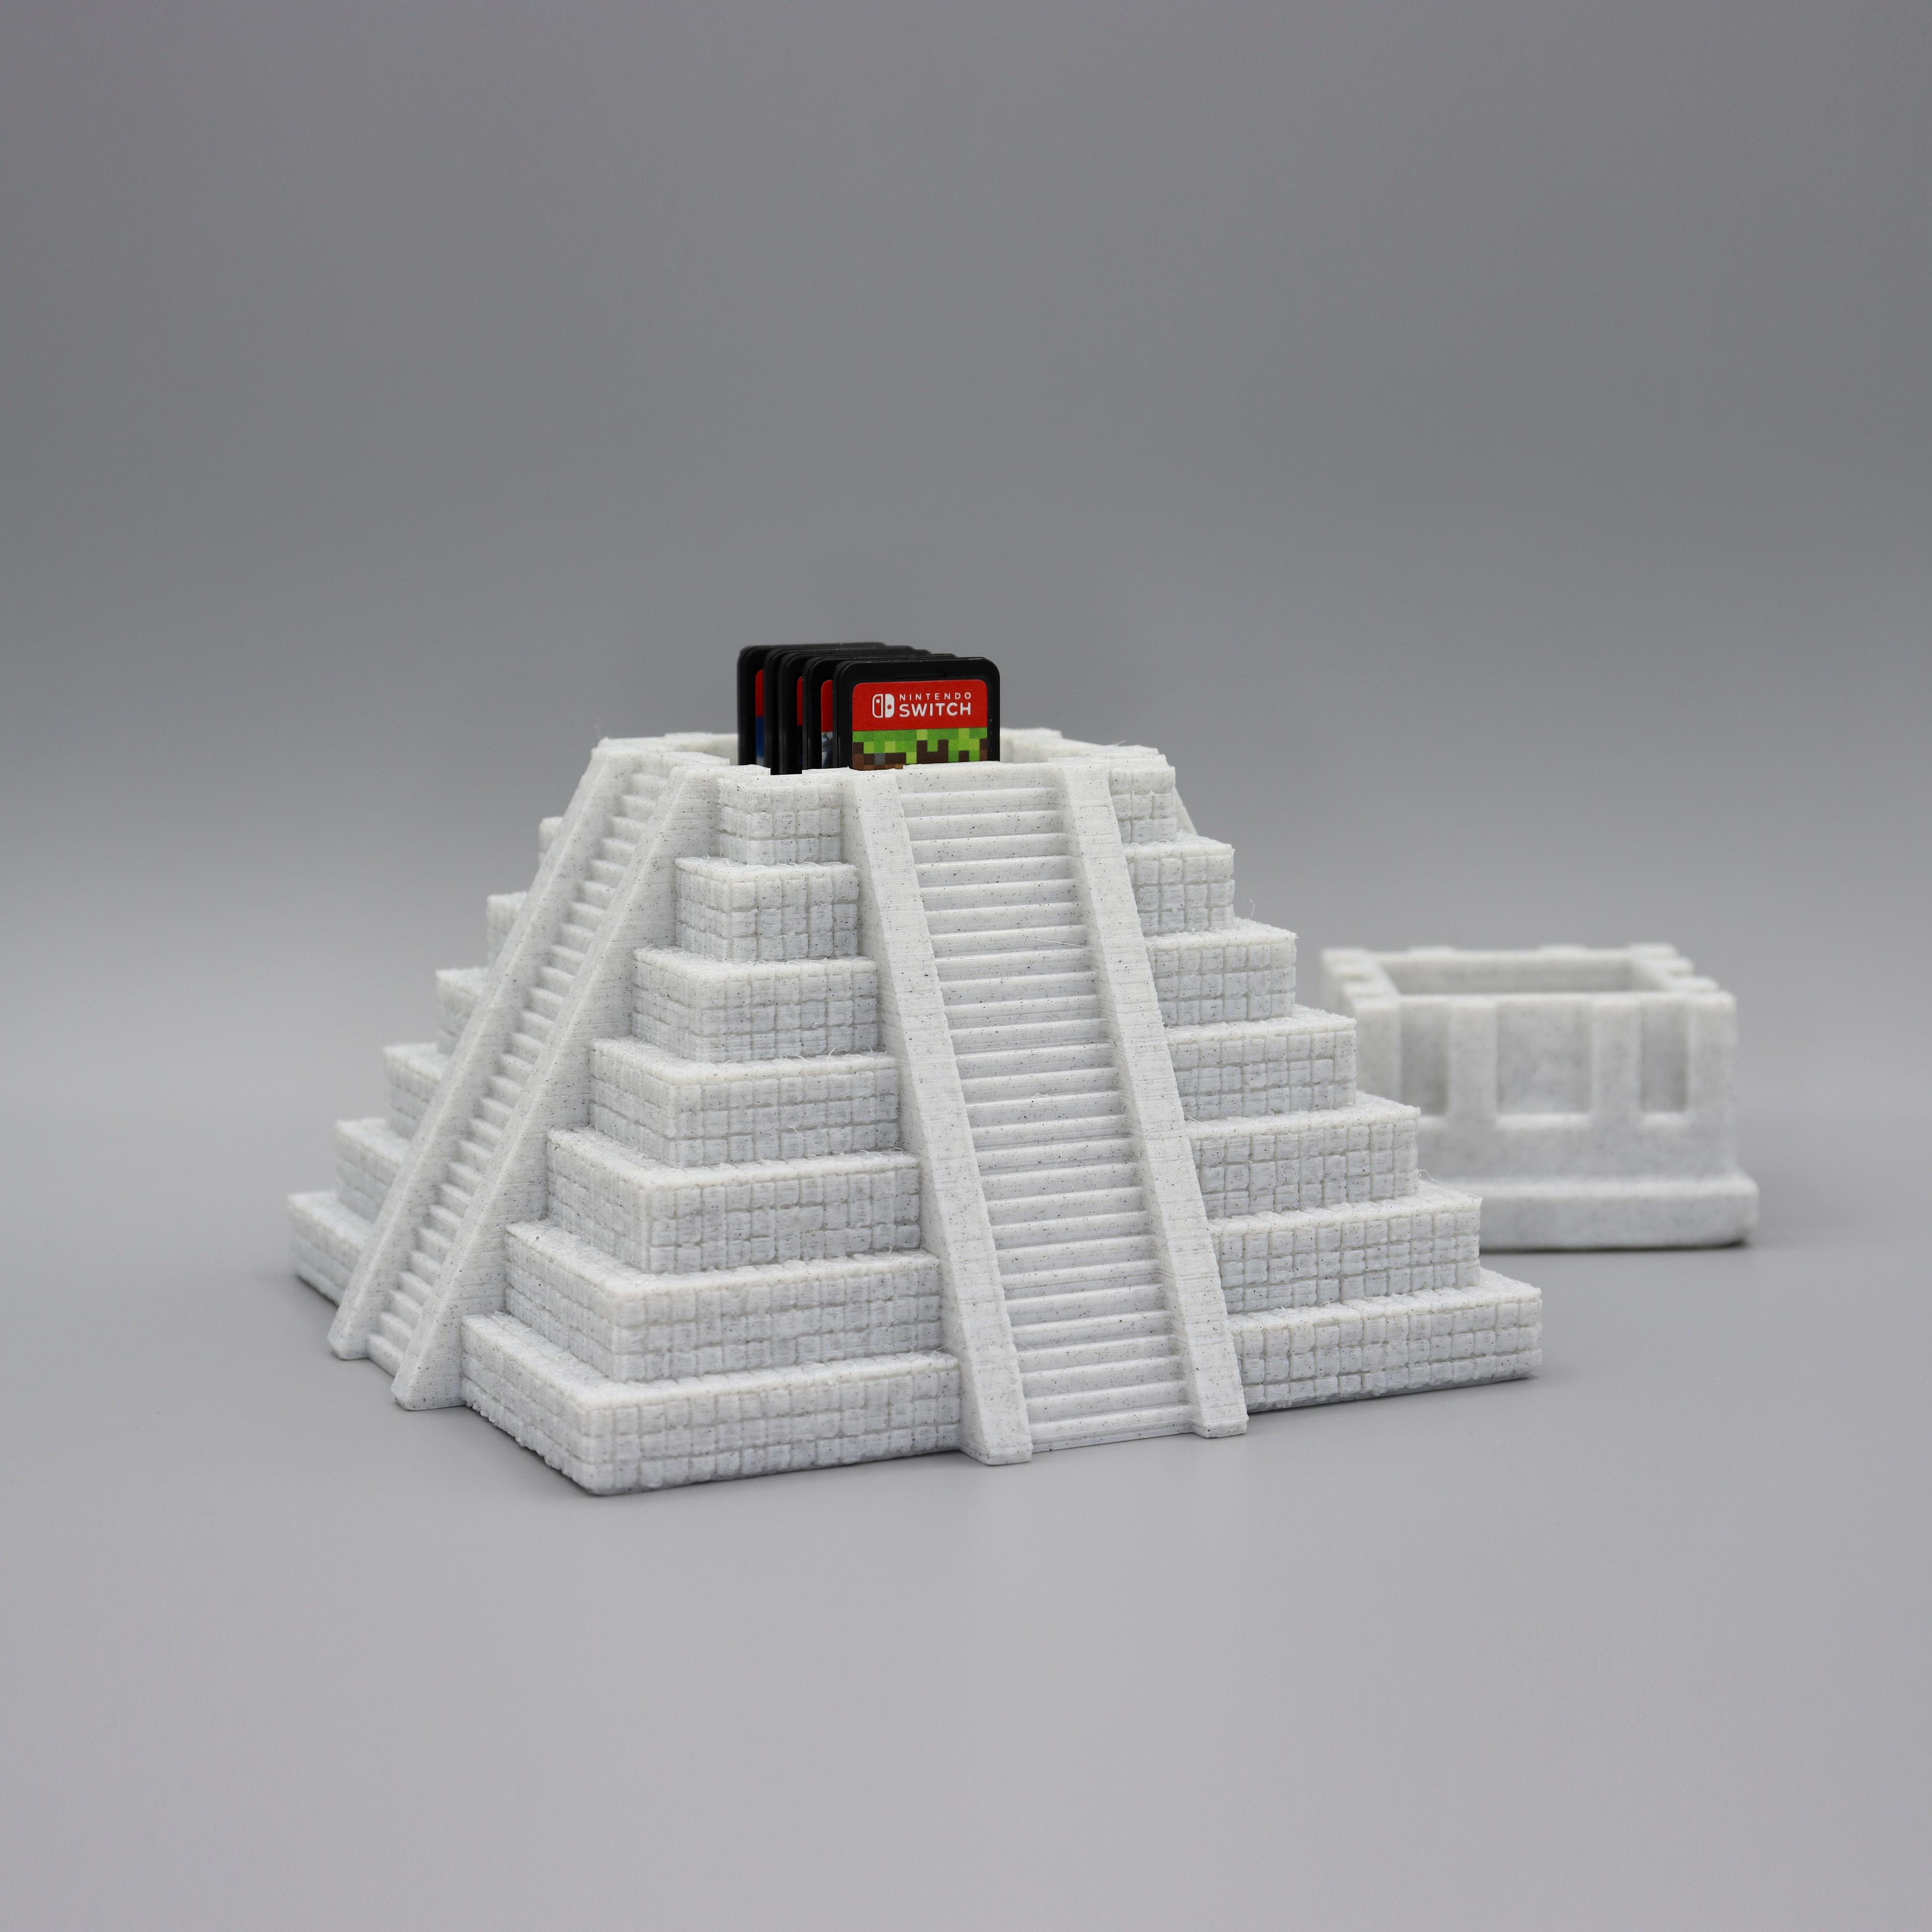 Aztec temple 3d model